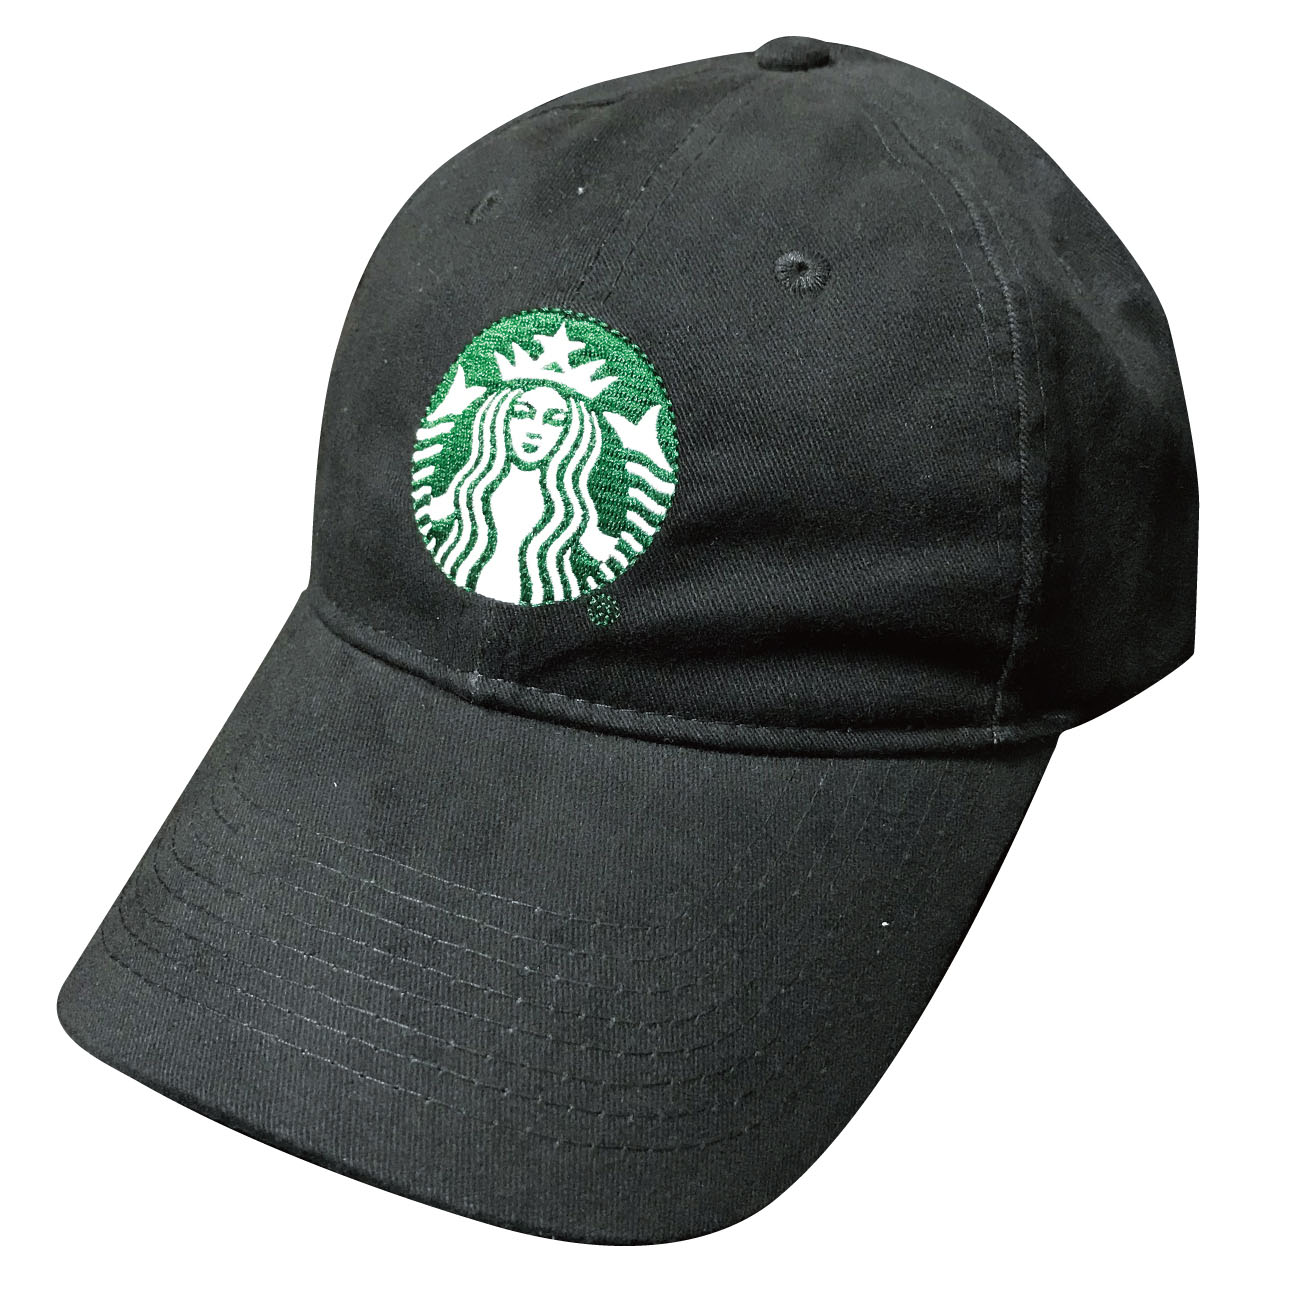 STARBUCKS CAP